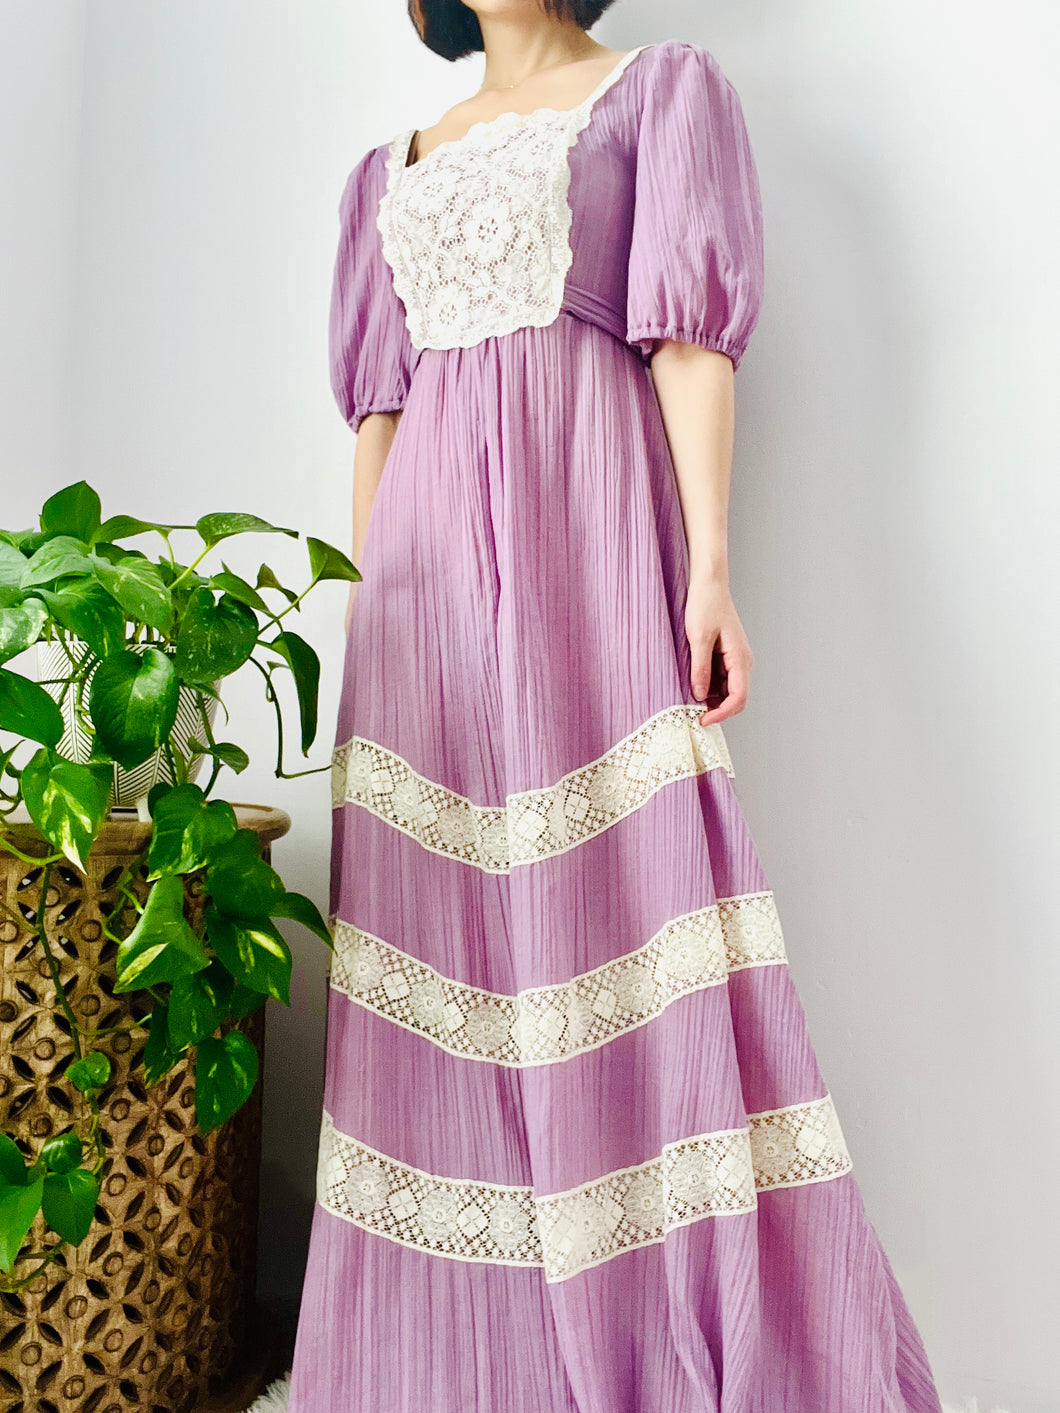 Vintage 1970s lilac color lace prairie dress